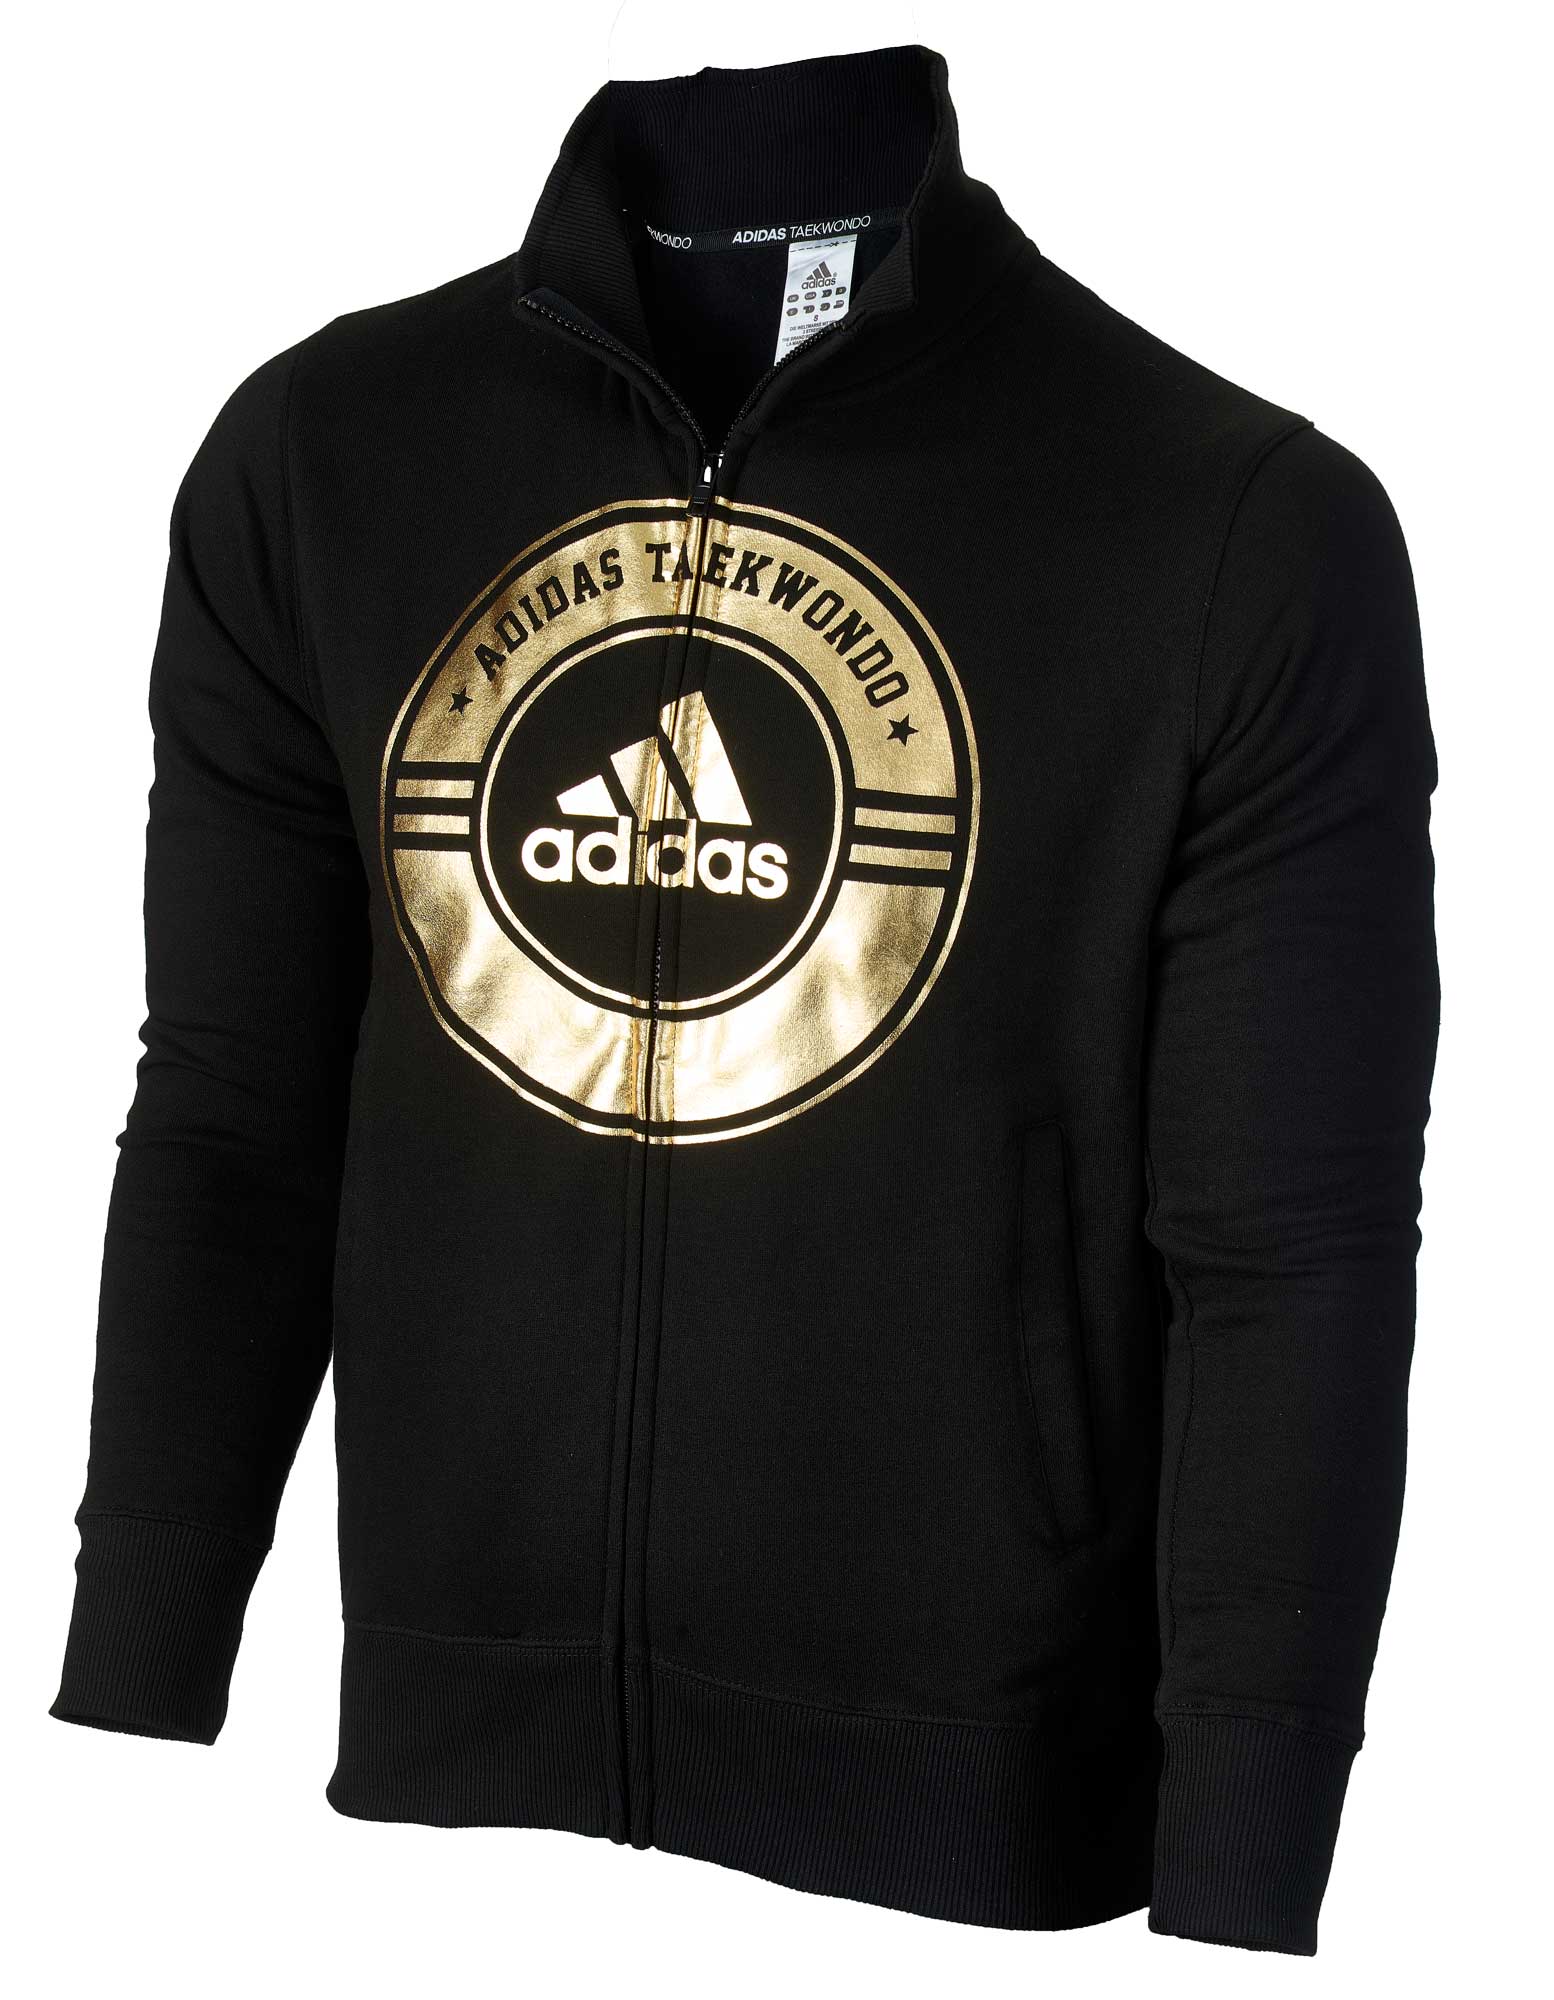 adidas Community line Jacket Taekwondo Circle adiCSJ02T black/gold